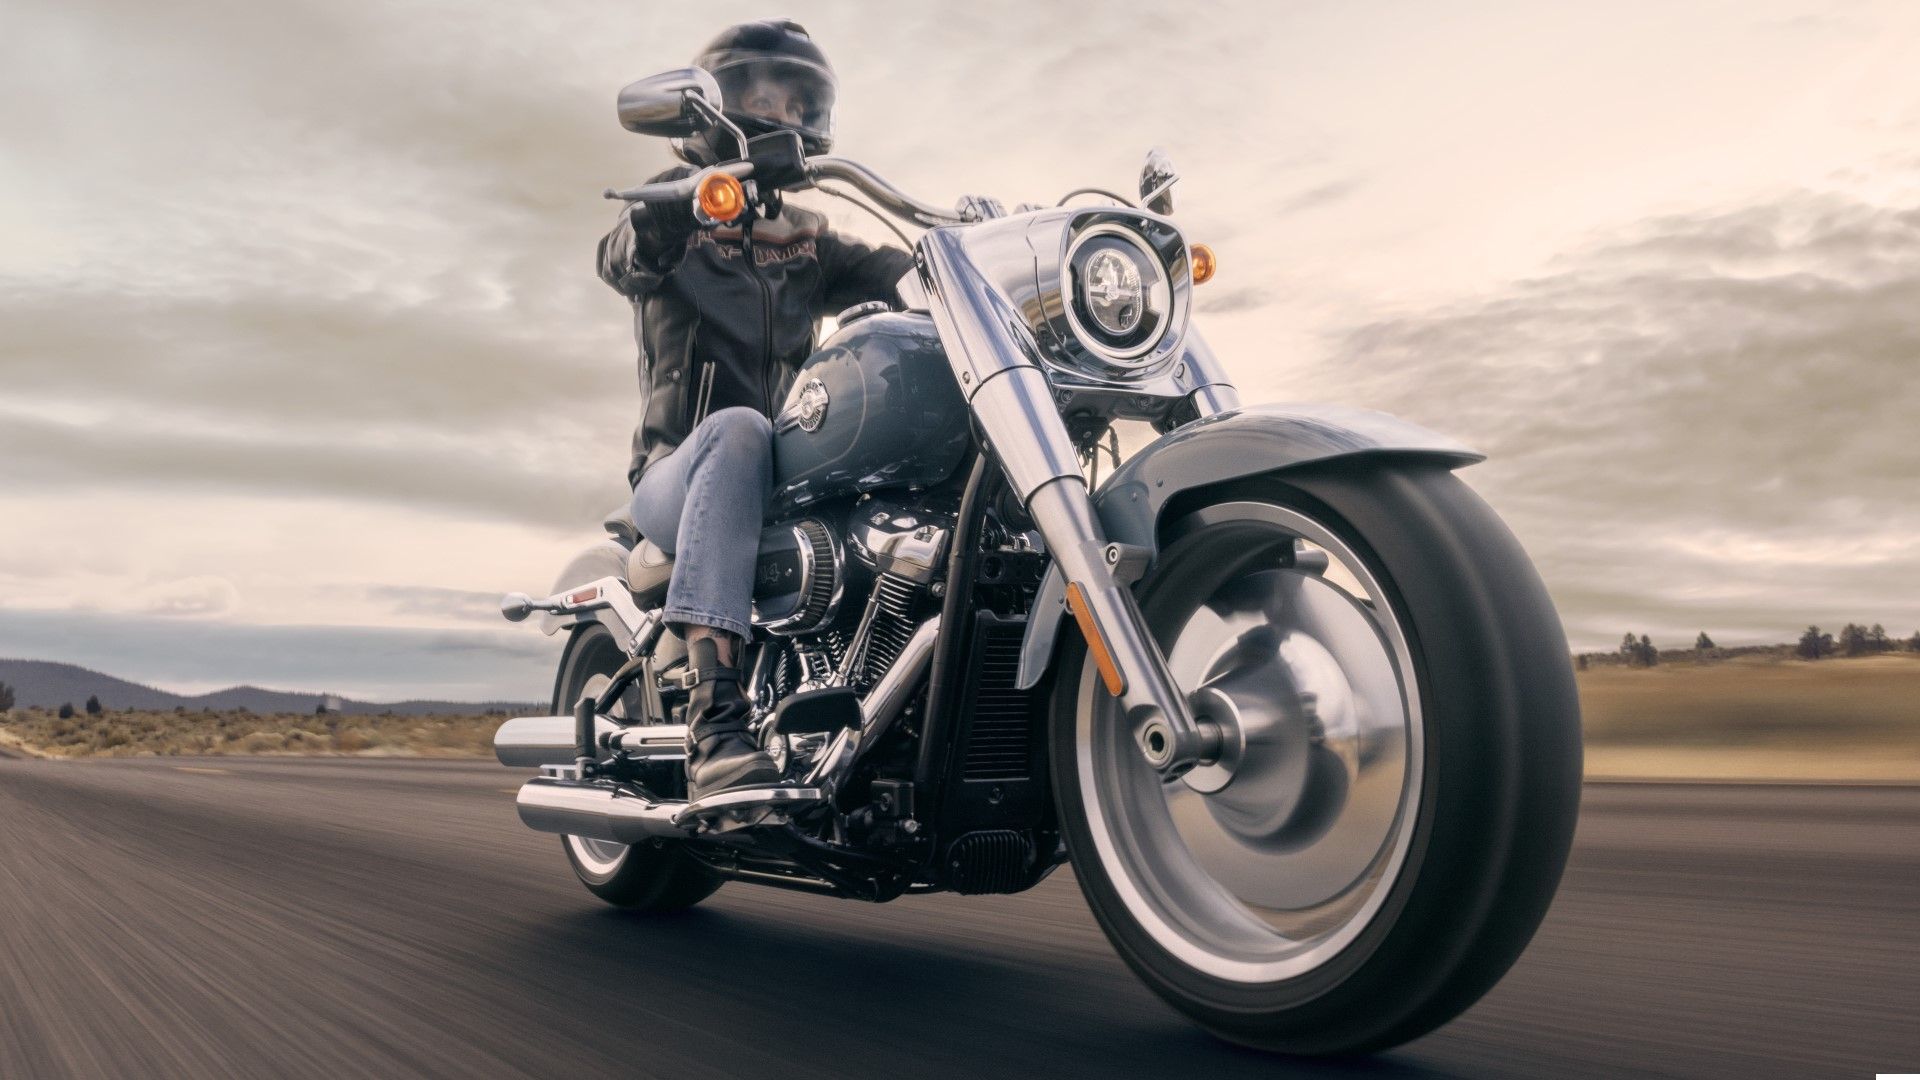 2024 Harley-Davidson Fat Boy HD wallpaper view